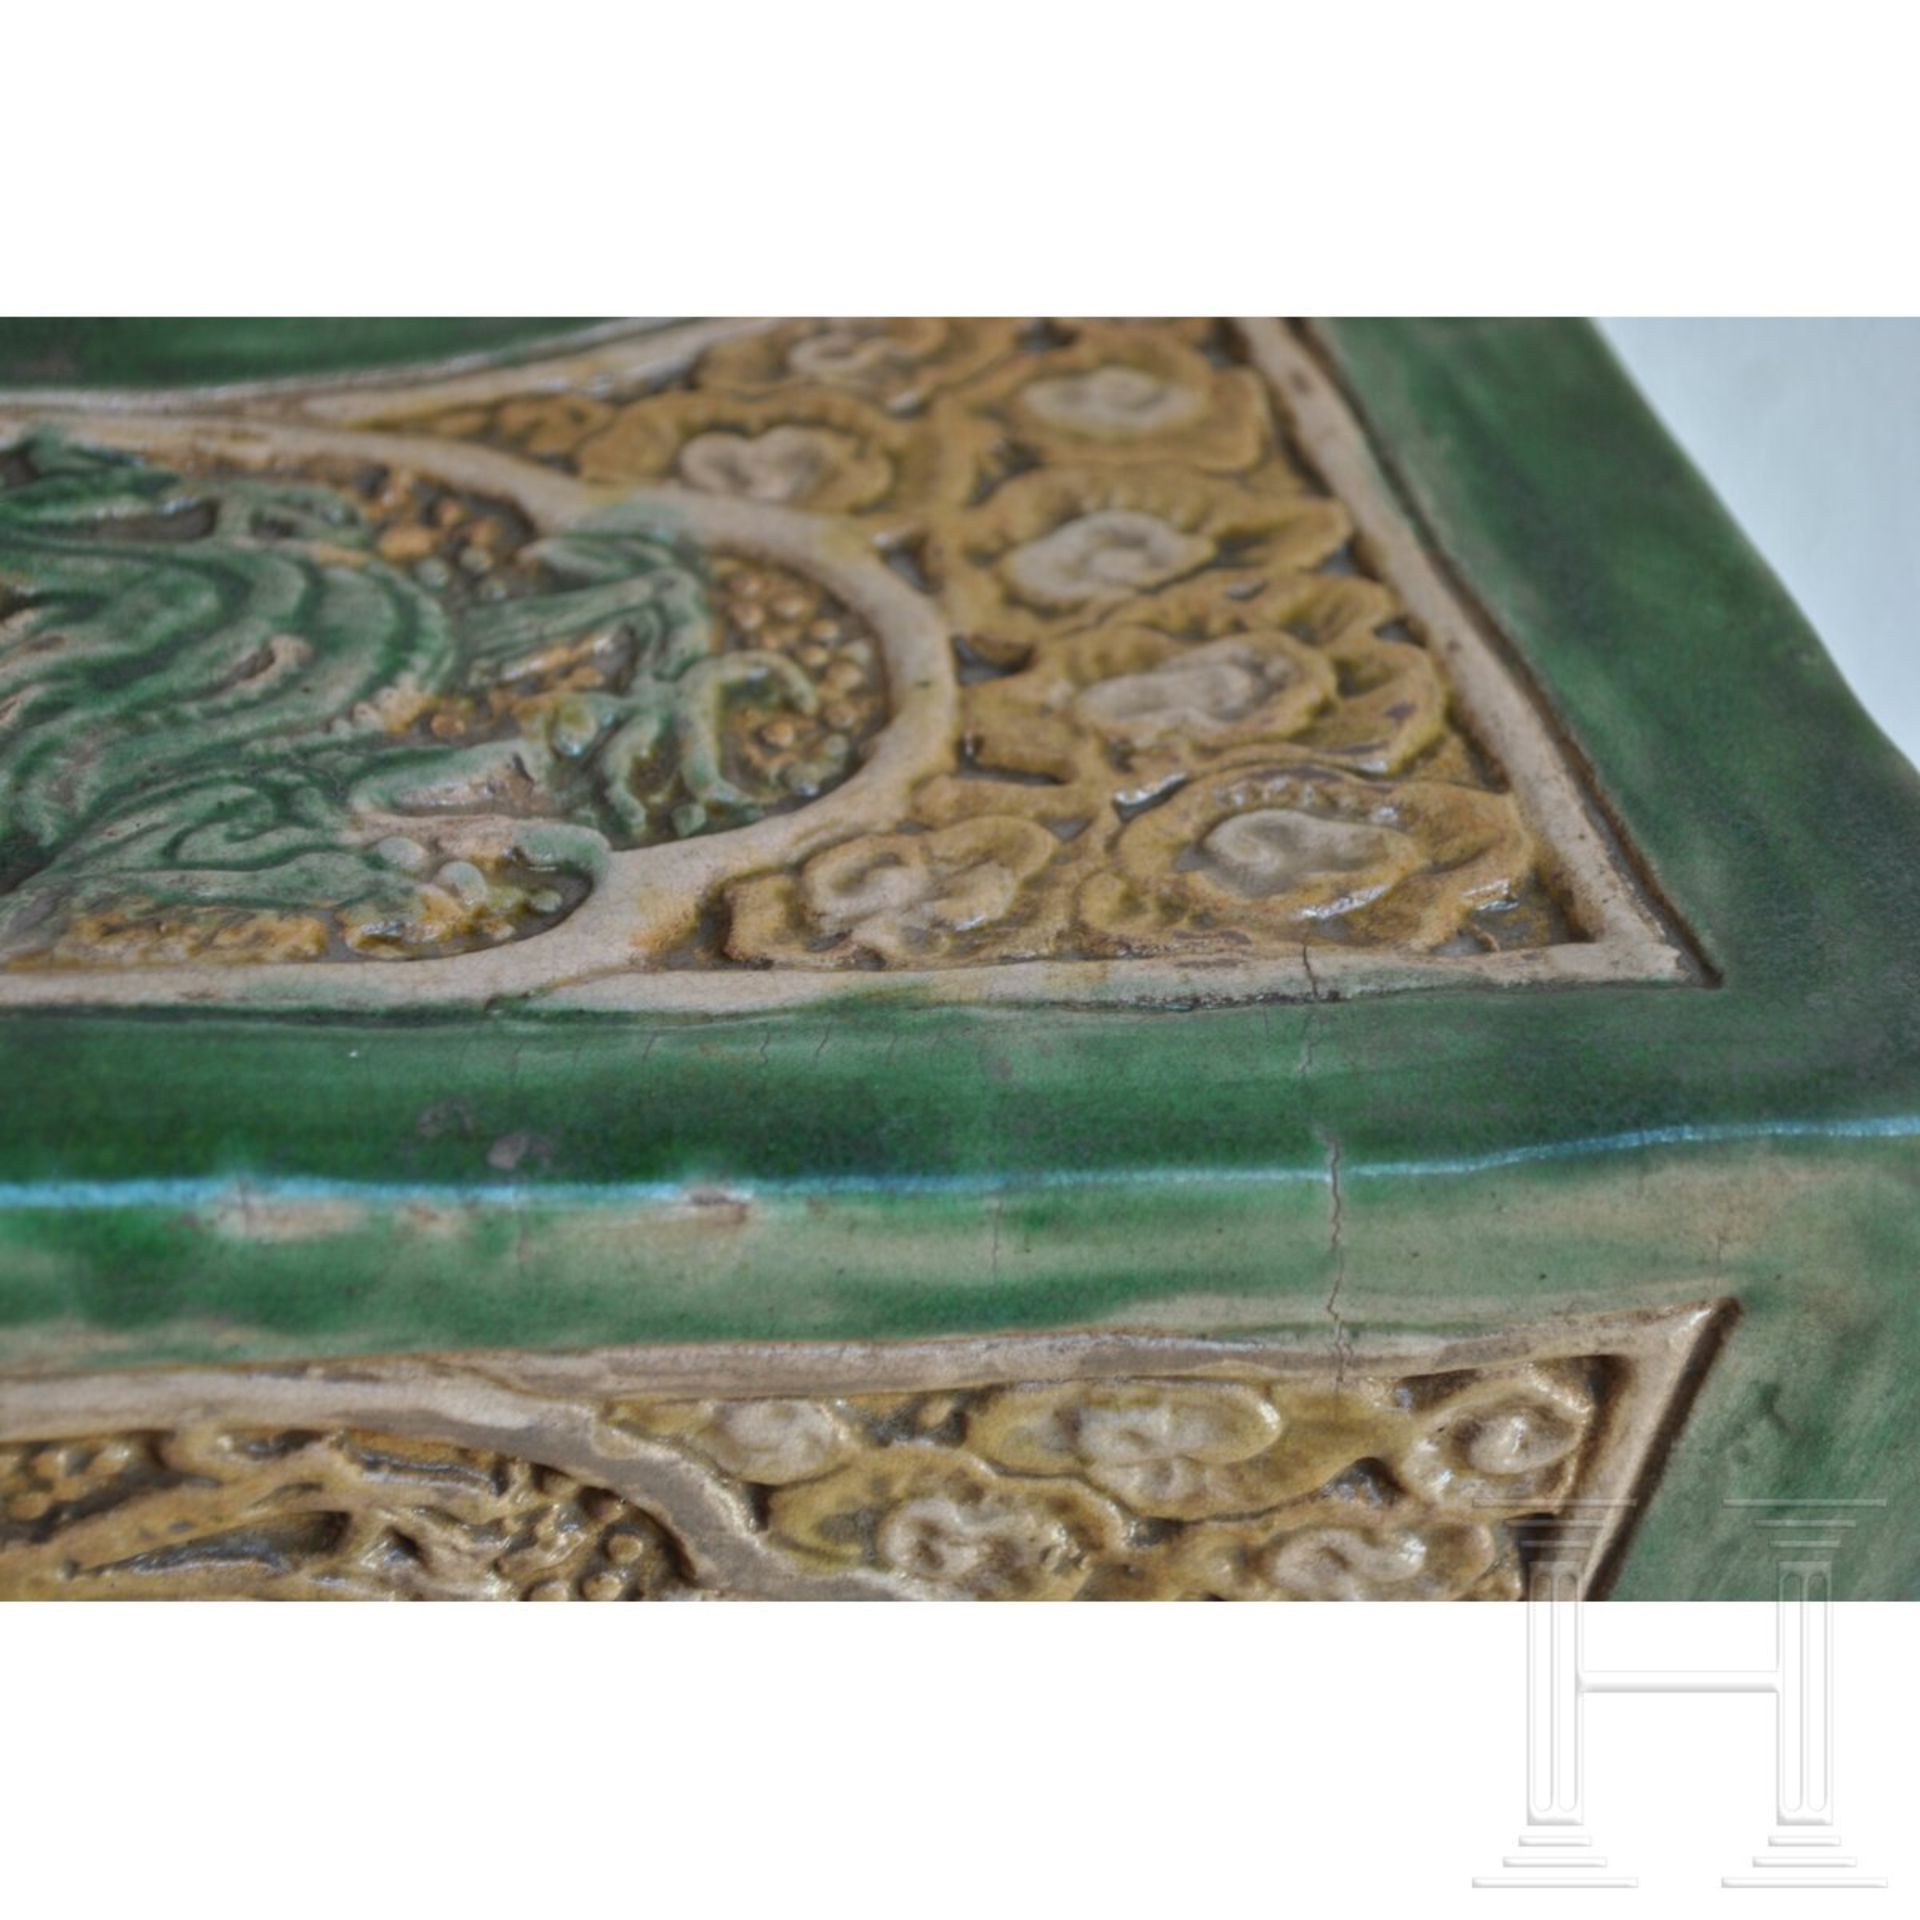 Seltenes Sancai-glasiertes Kissen, China, wohl Liao-Dynastie (907 - 1125) oder später - Bild 9 aus 14